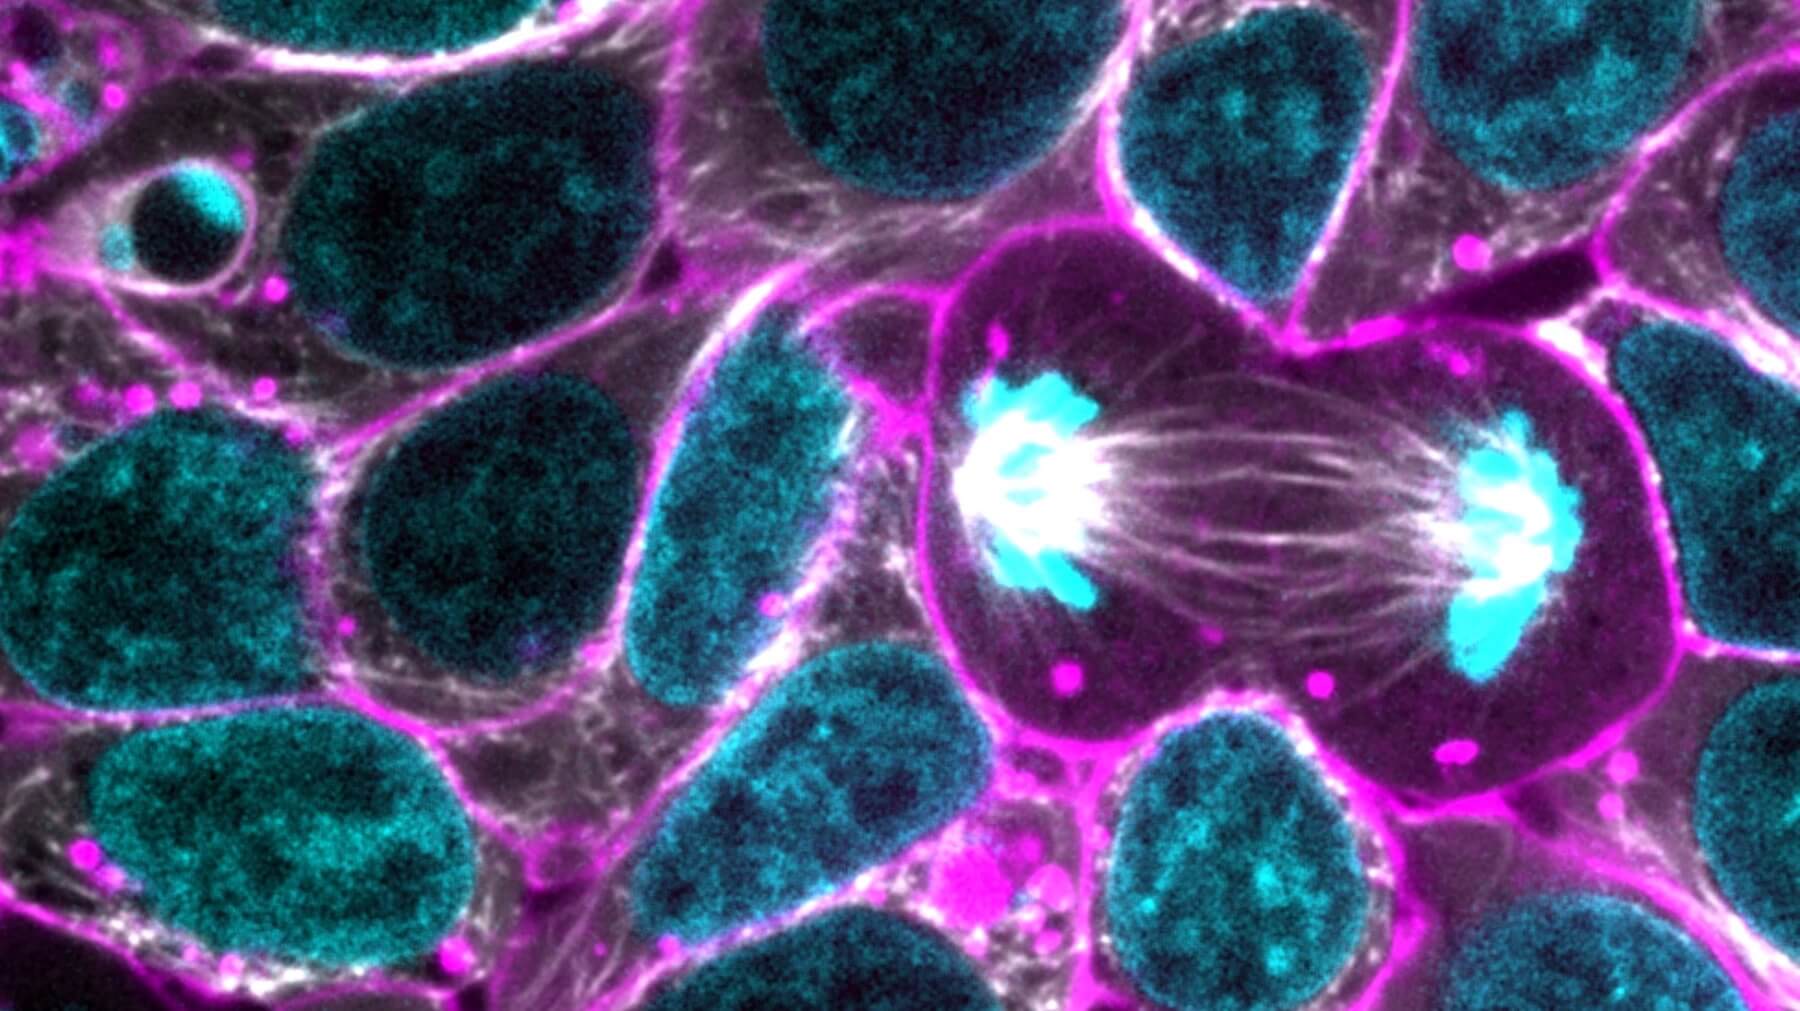 Alpha tubulin illuminated in healthy human iPS cells